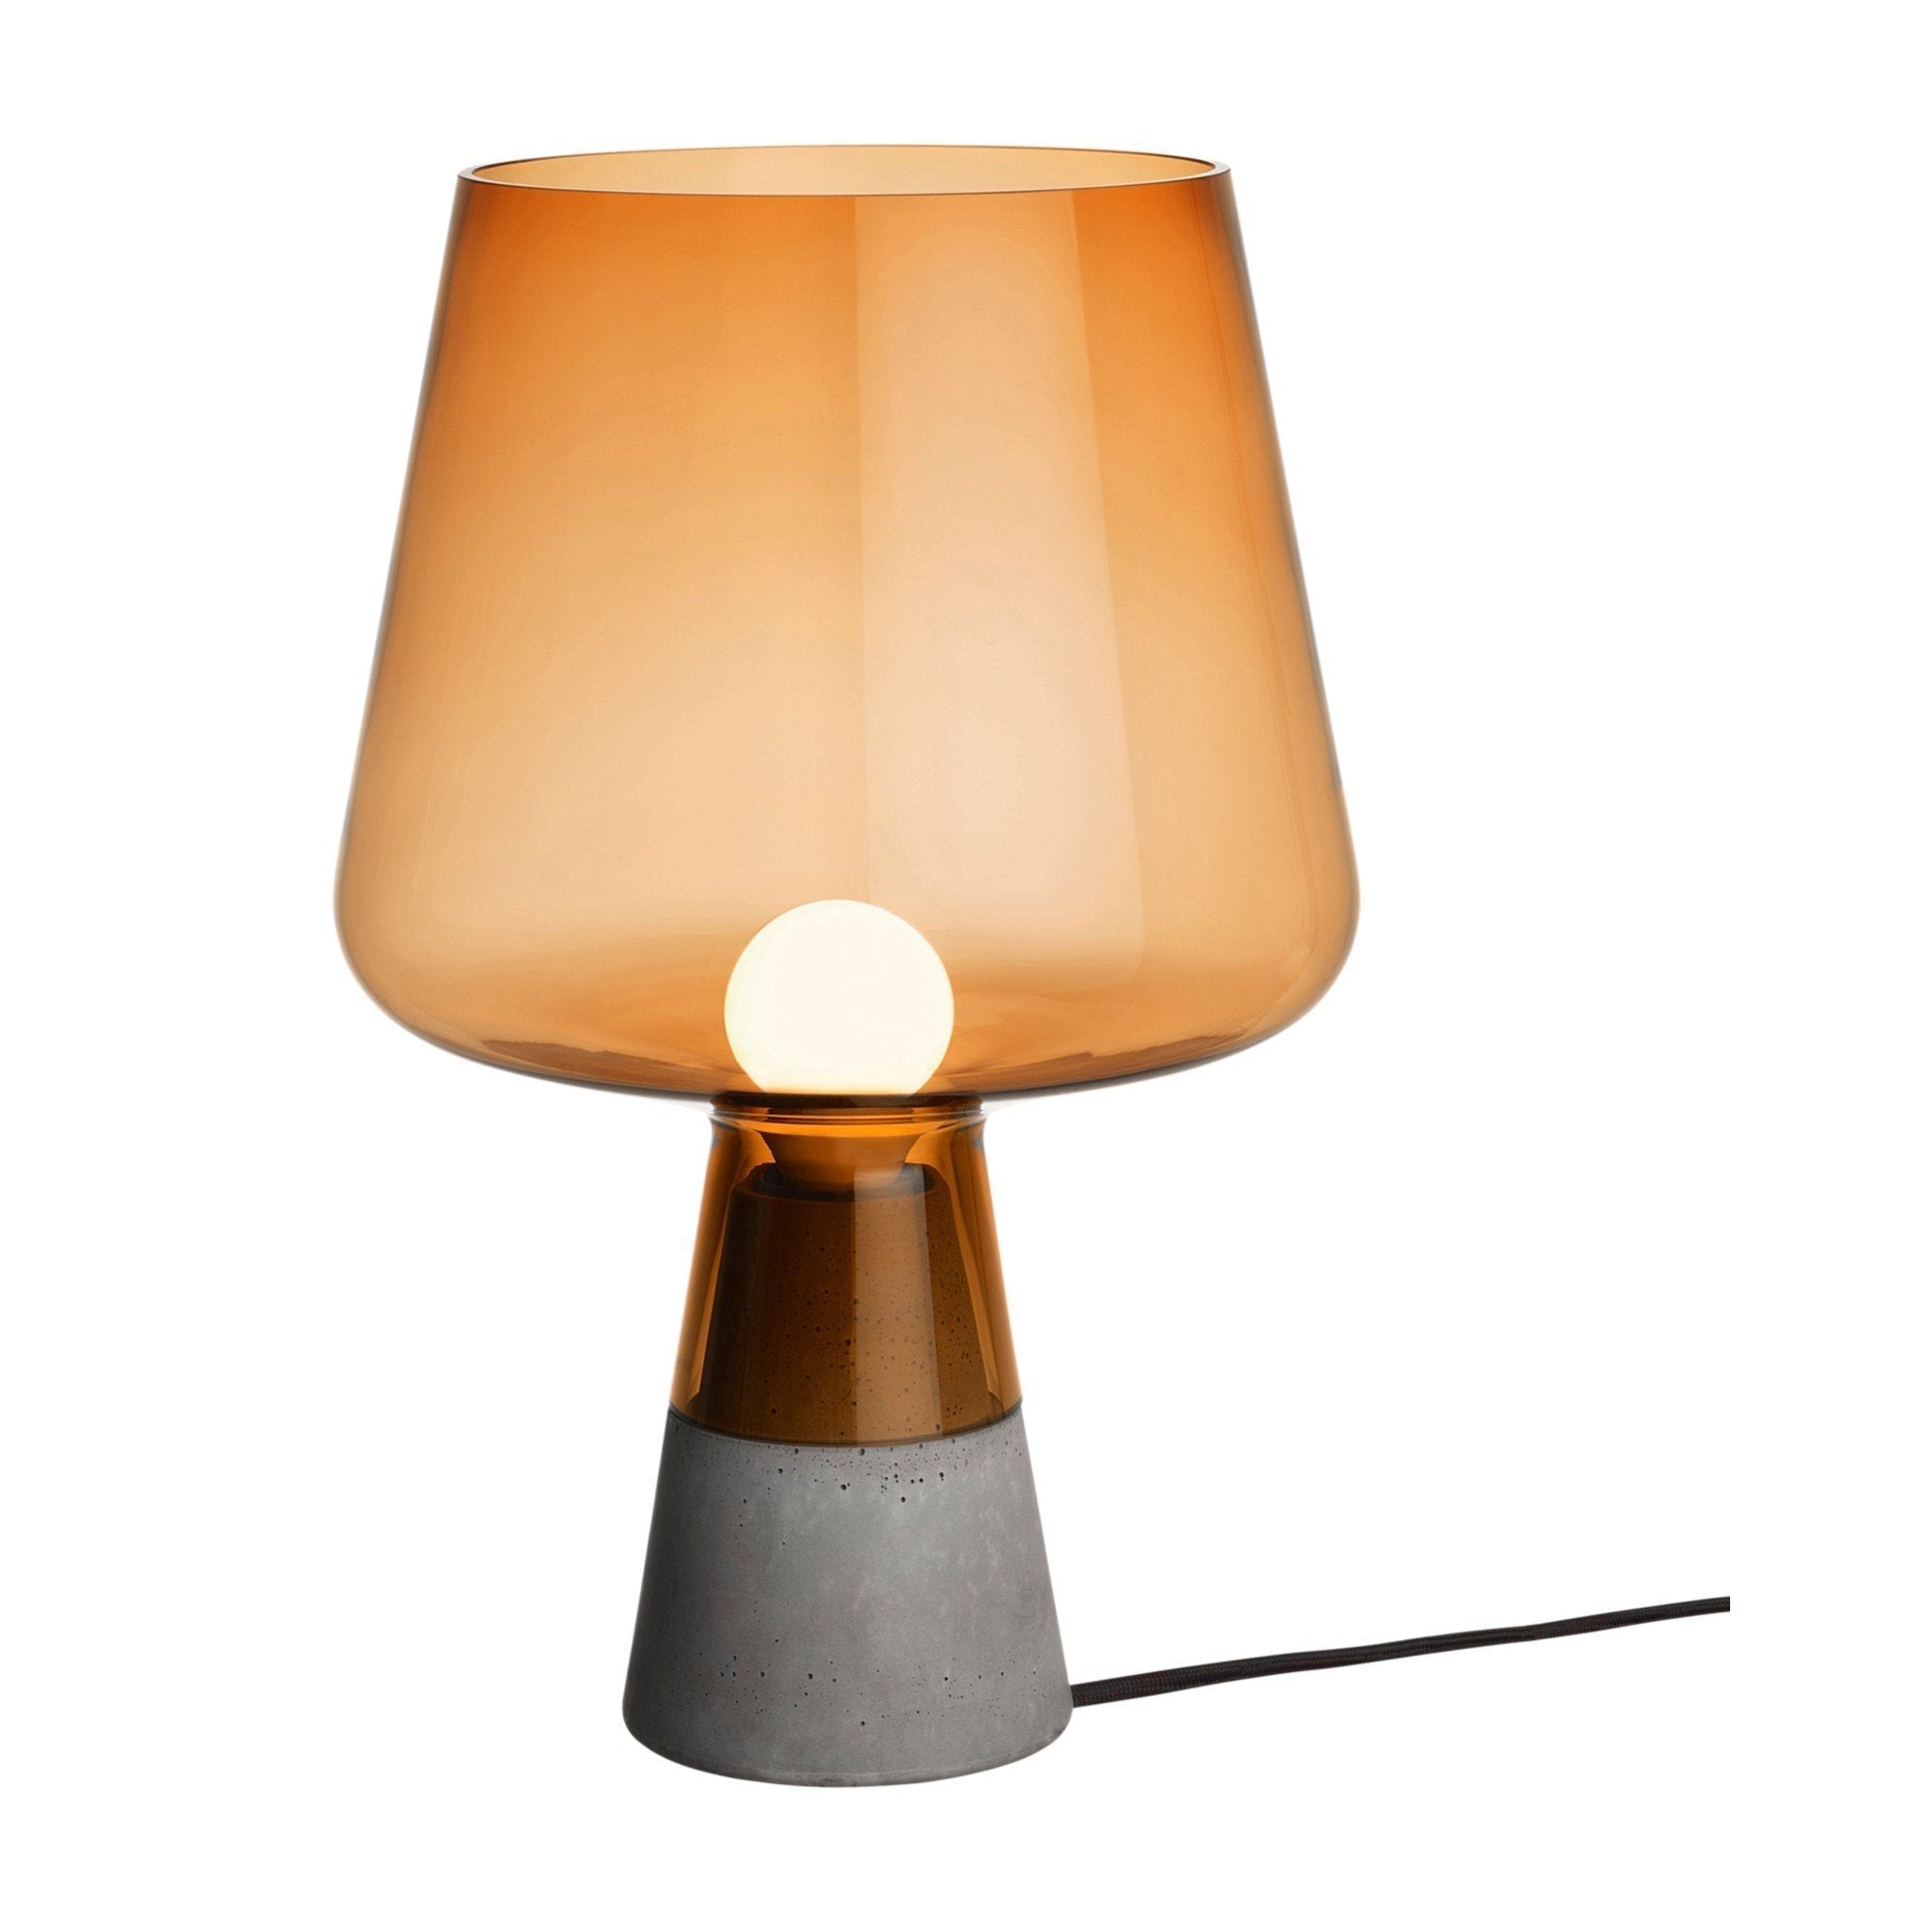 Iittala Leimu Lampe Kupfer, 38cm-Tischlampe-Iittala-6428501303170-1009438-IIT-inwohn